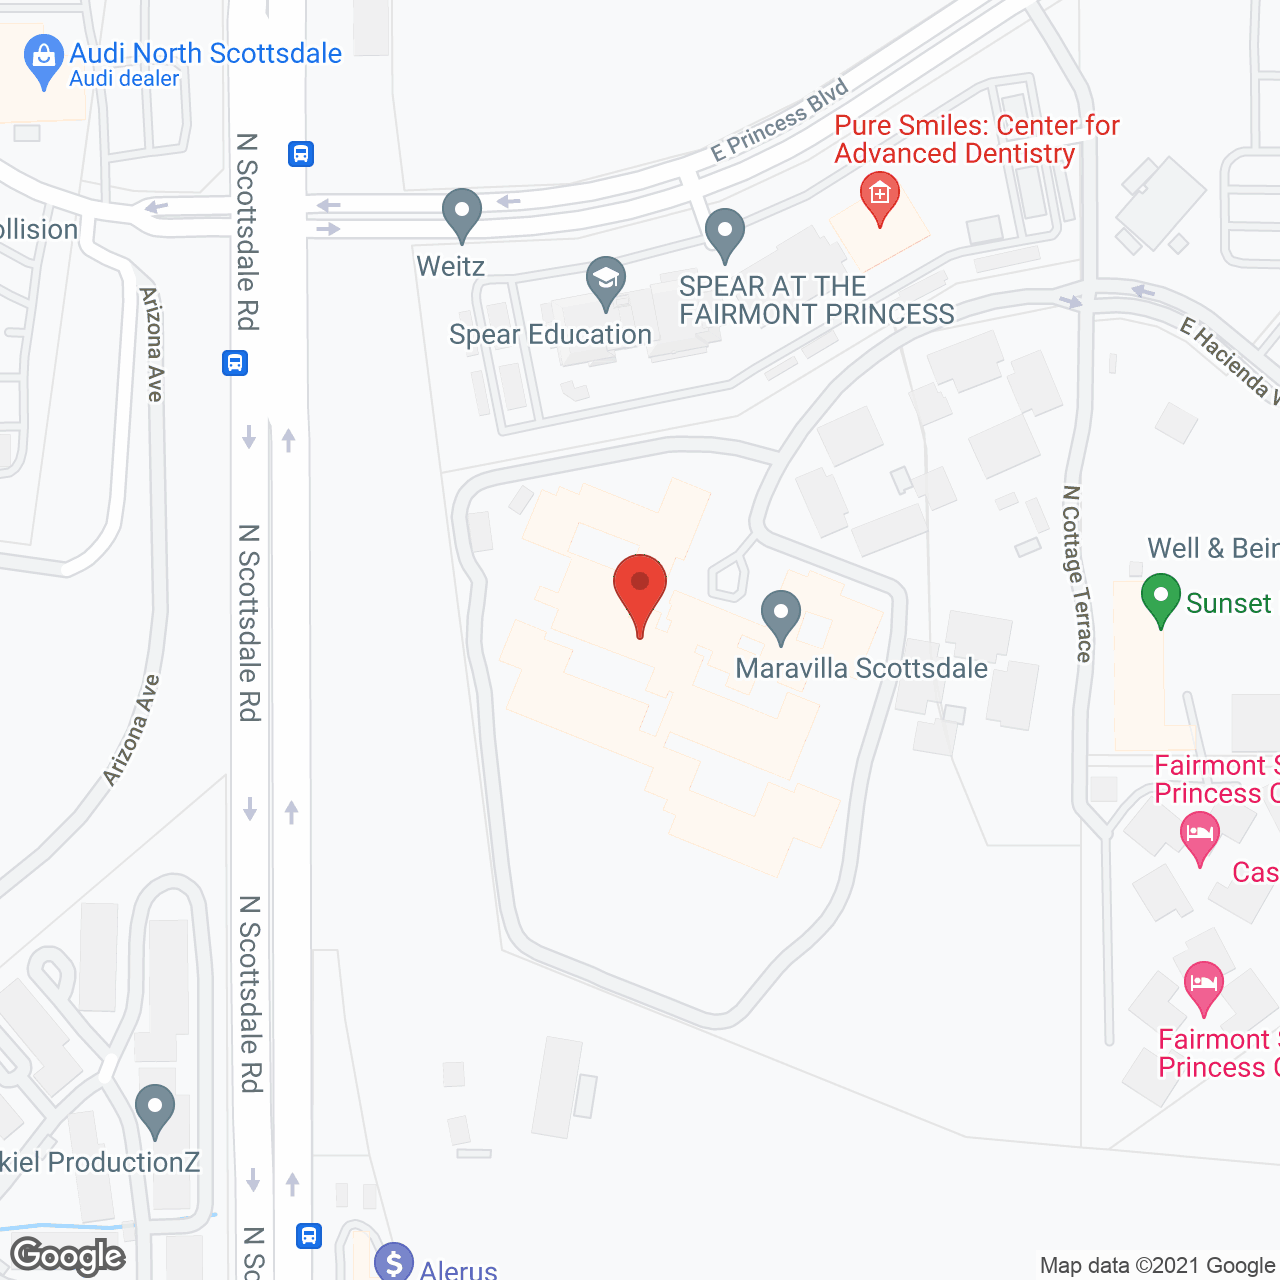 Maravilla Scottsdale in google map